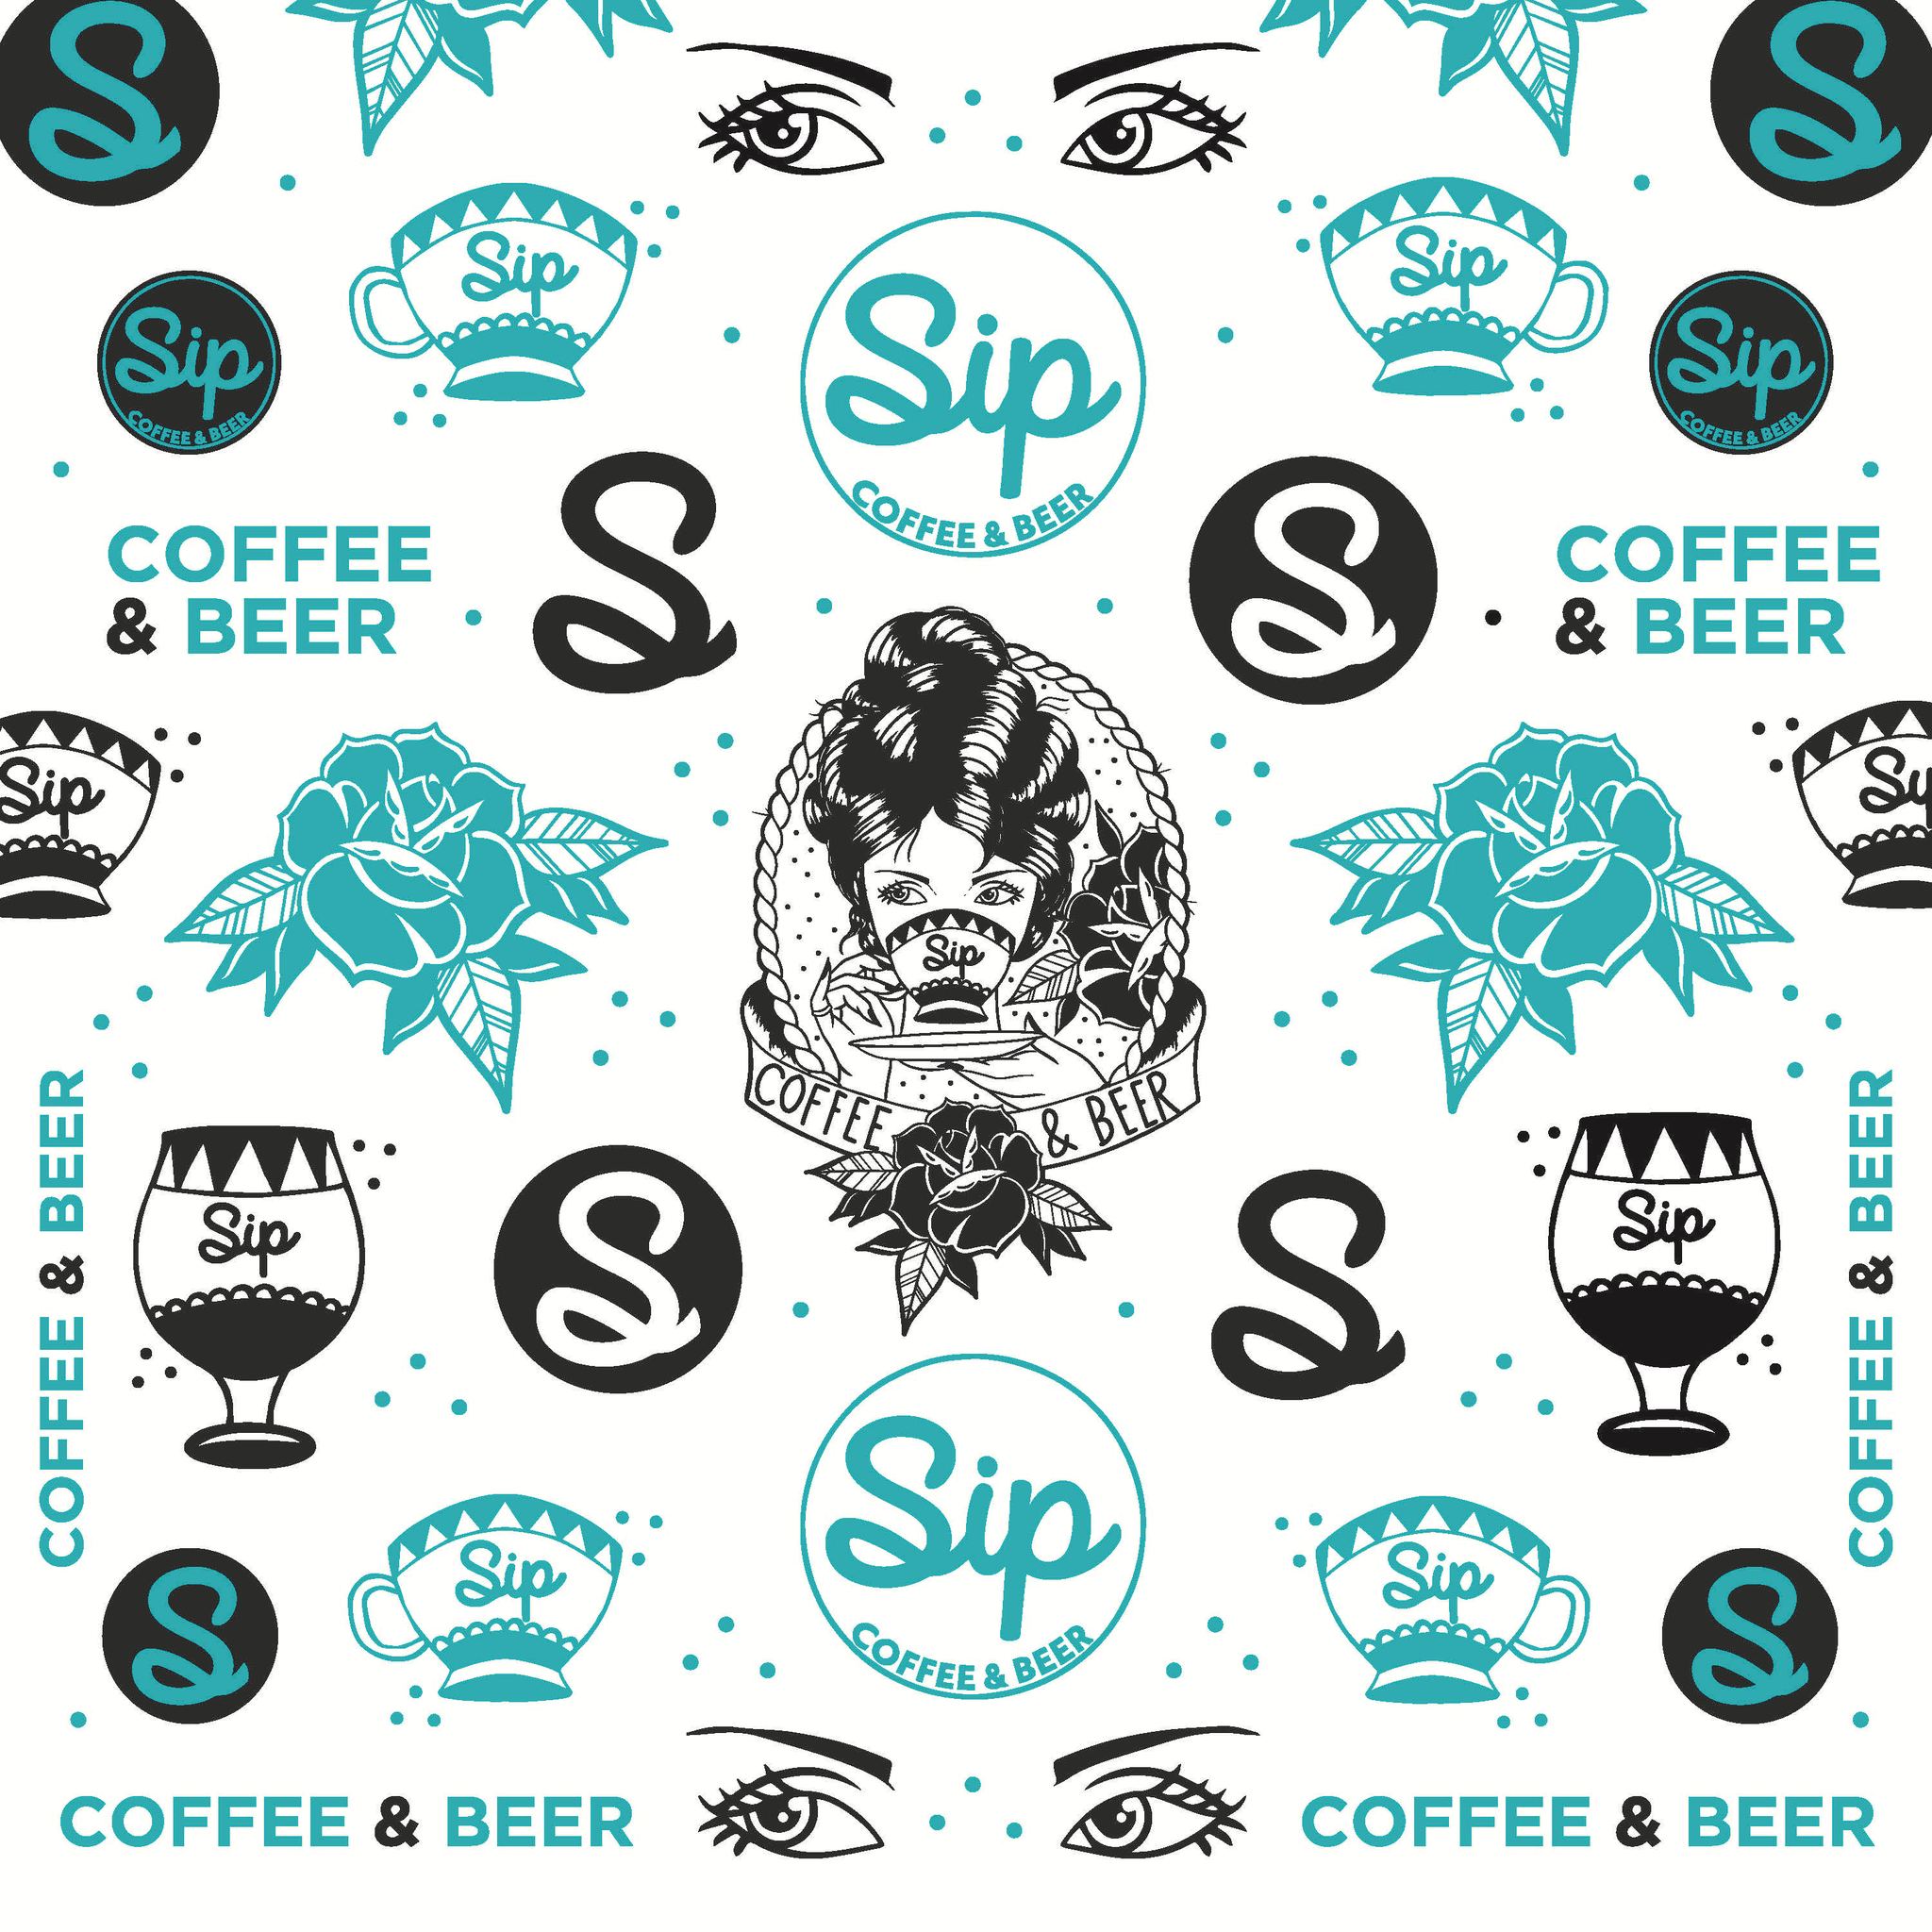 Sip Coffee & Beer: Phoenix